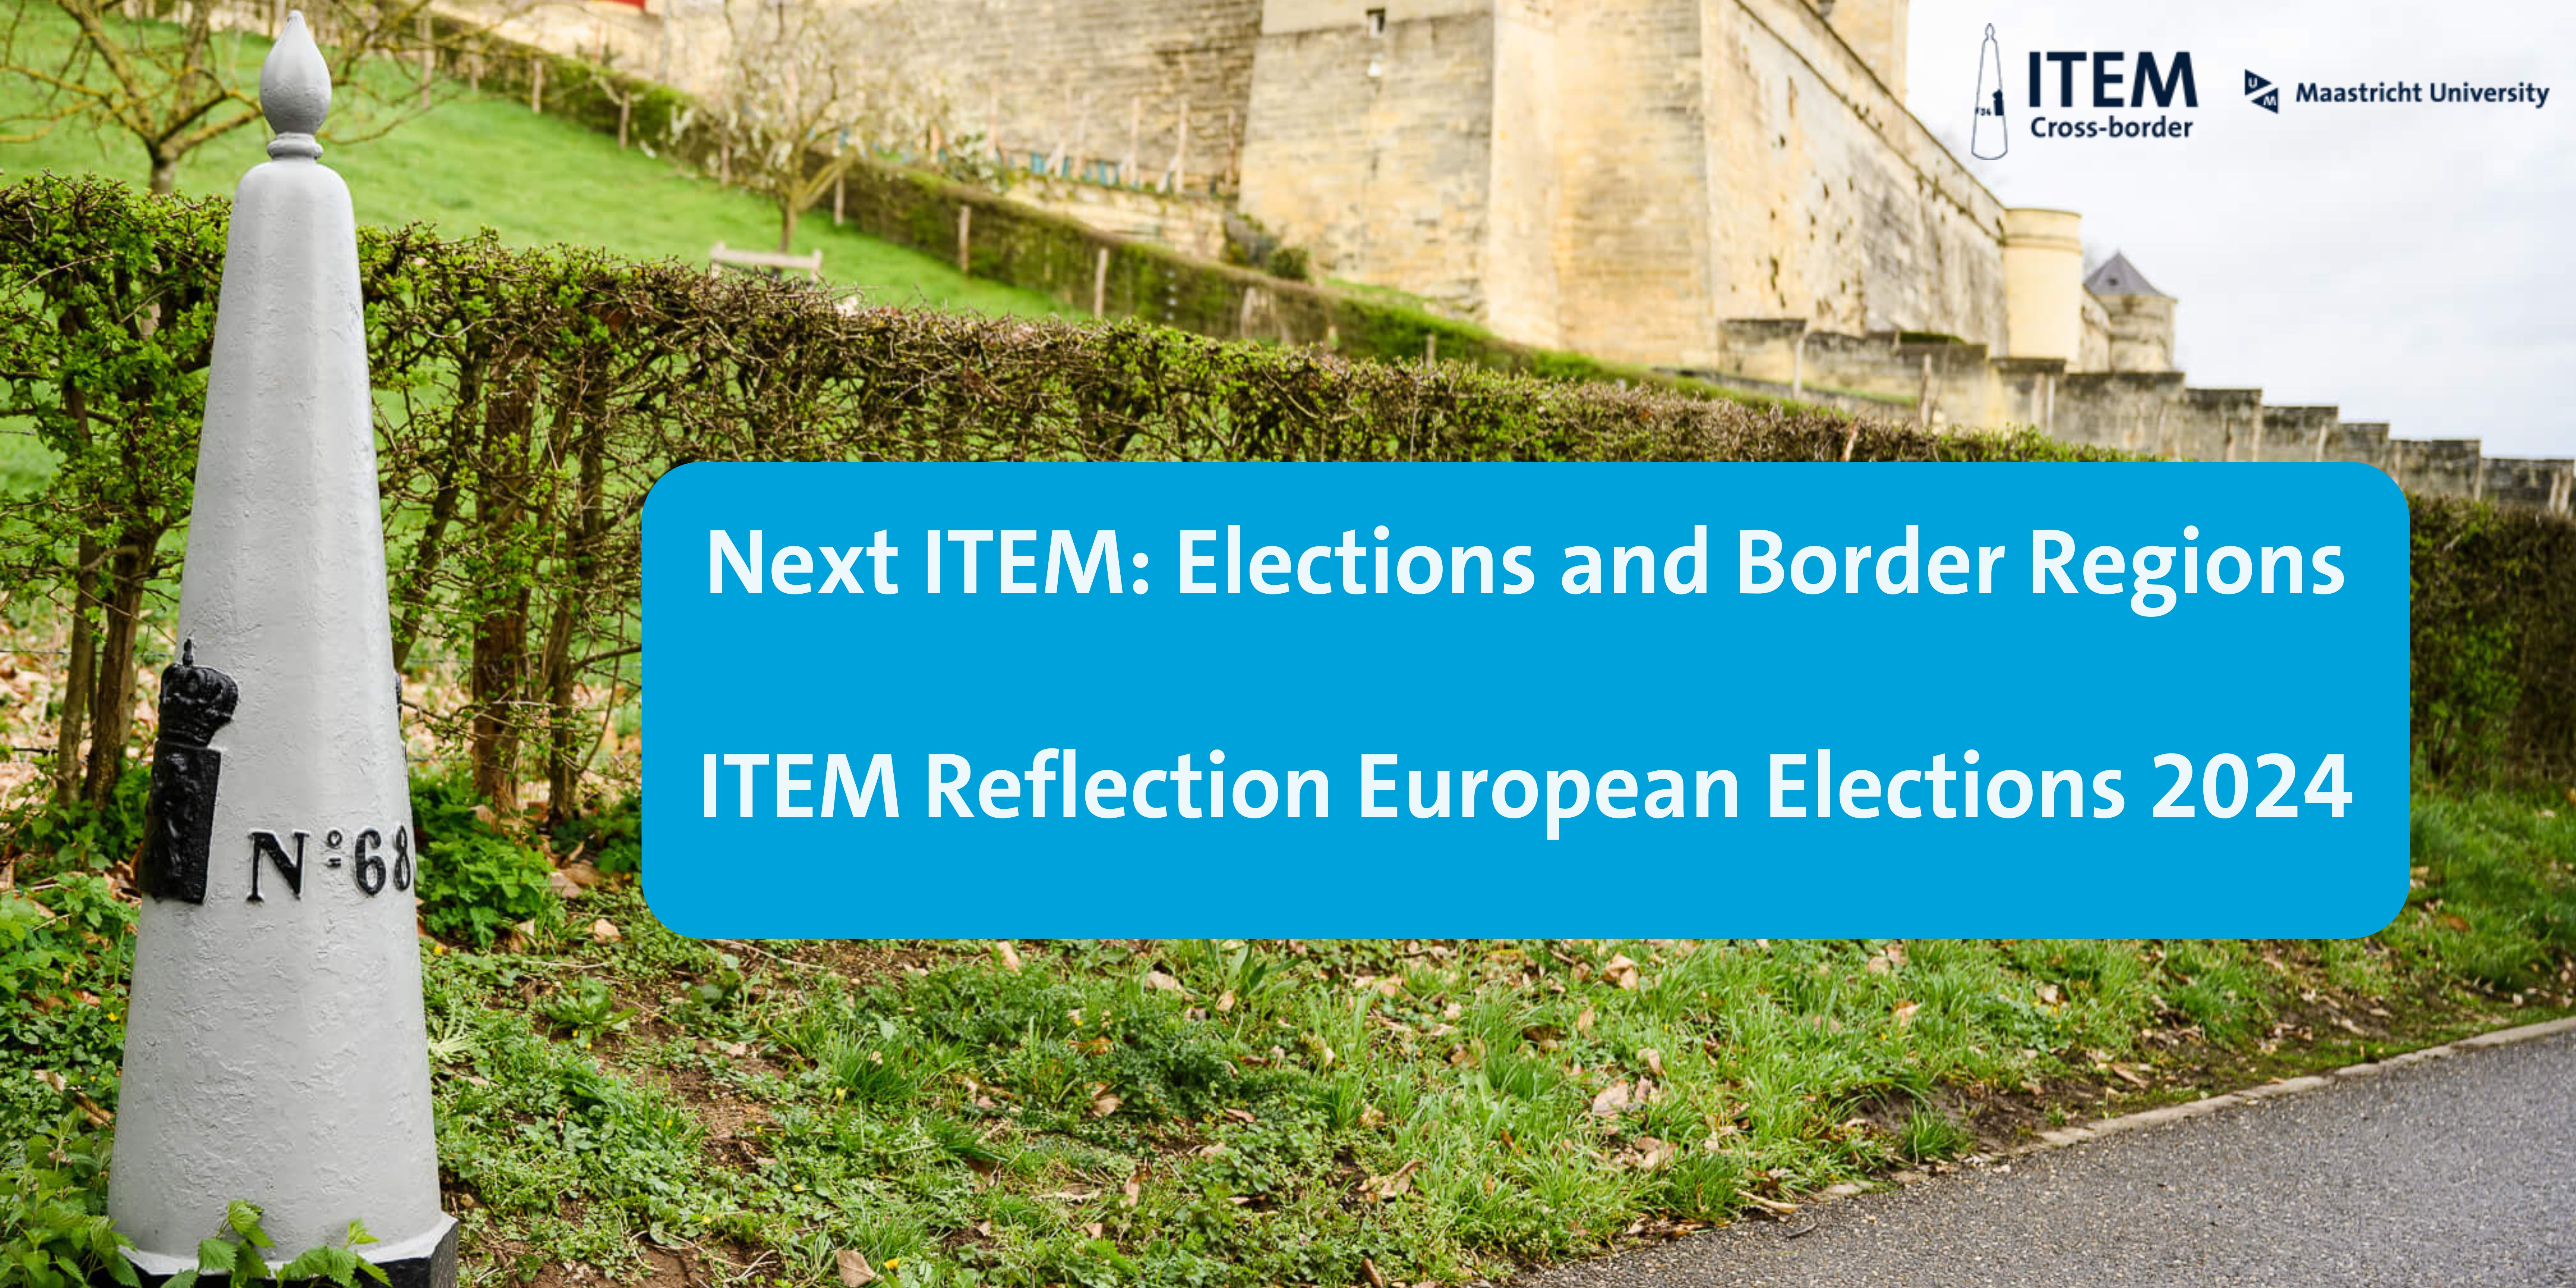 NEXT ITEM: Europese verkiezingen